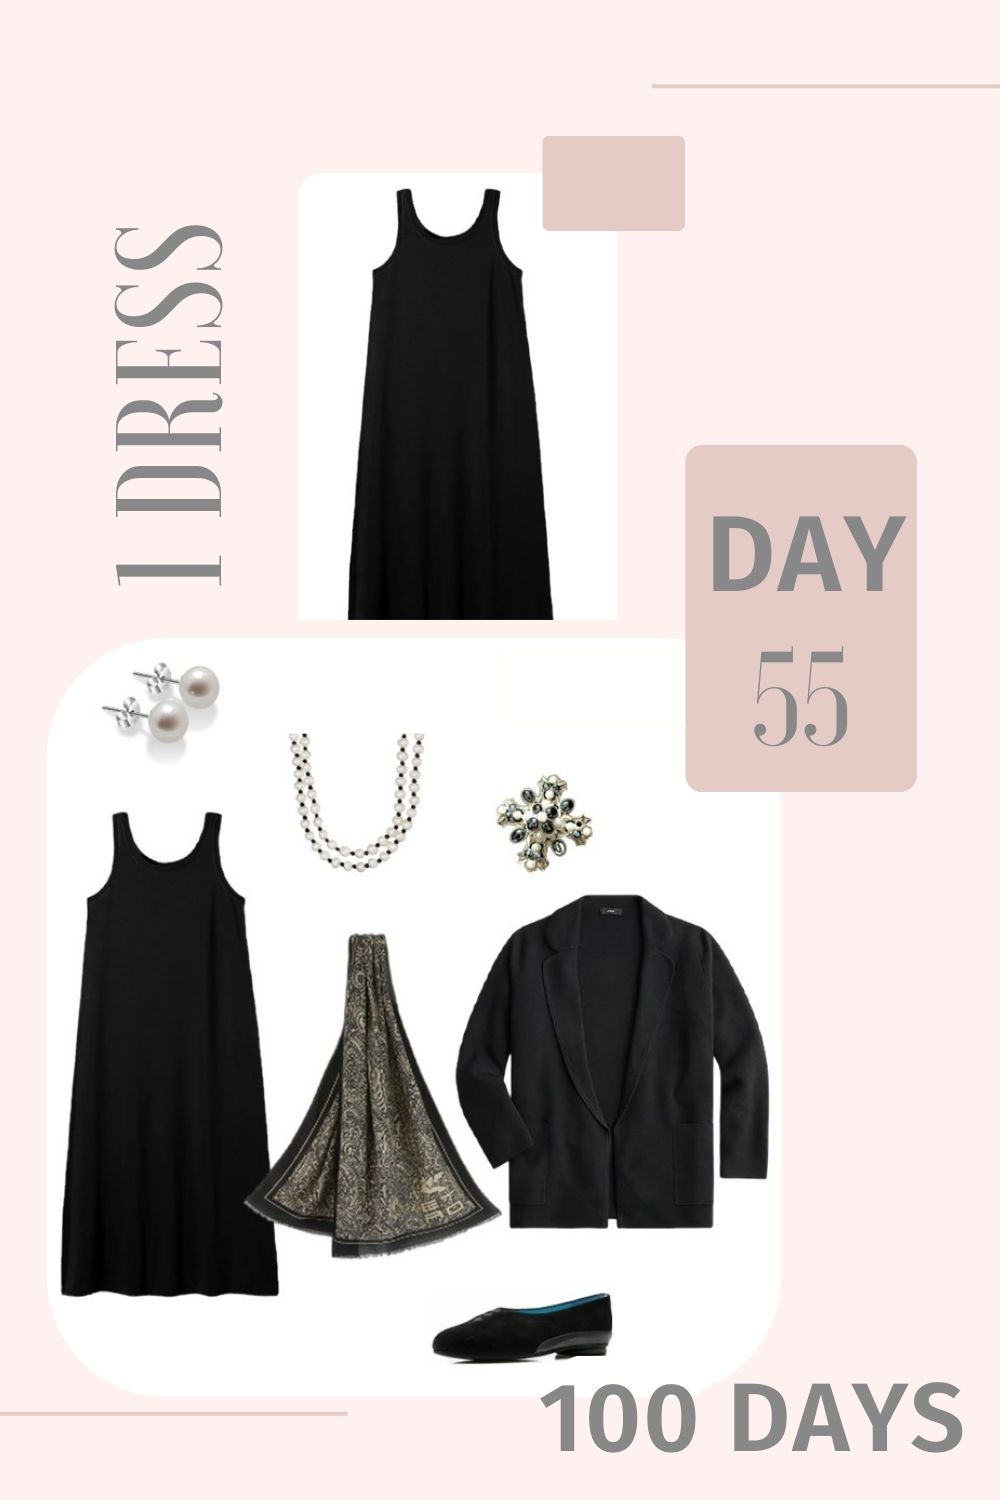 1 Dress 100 Days - Day 55